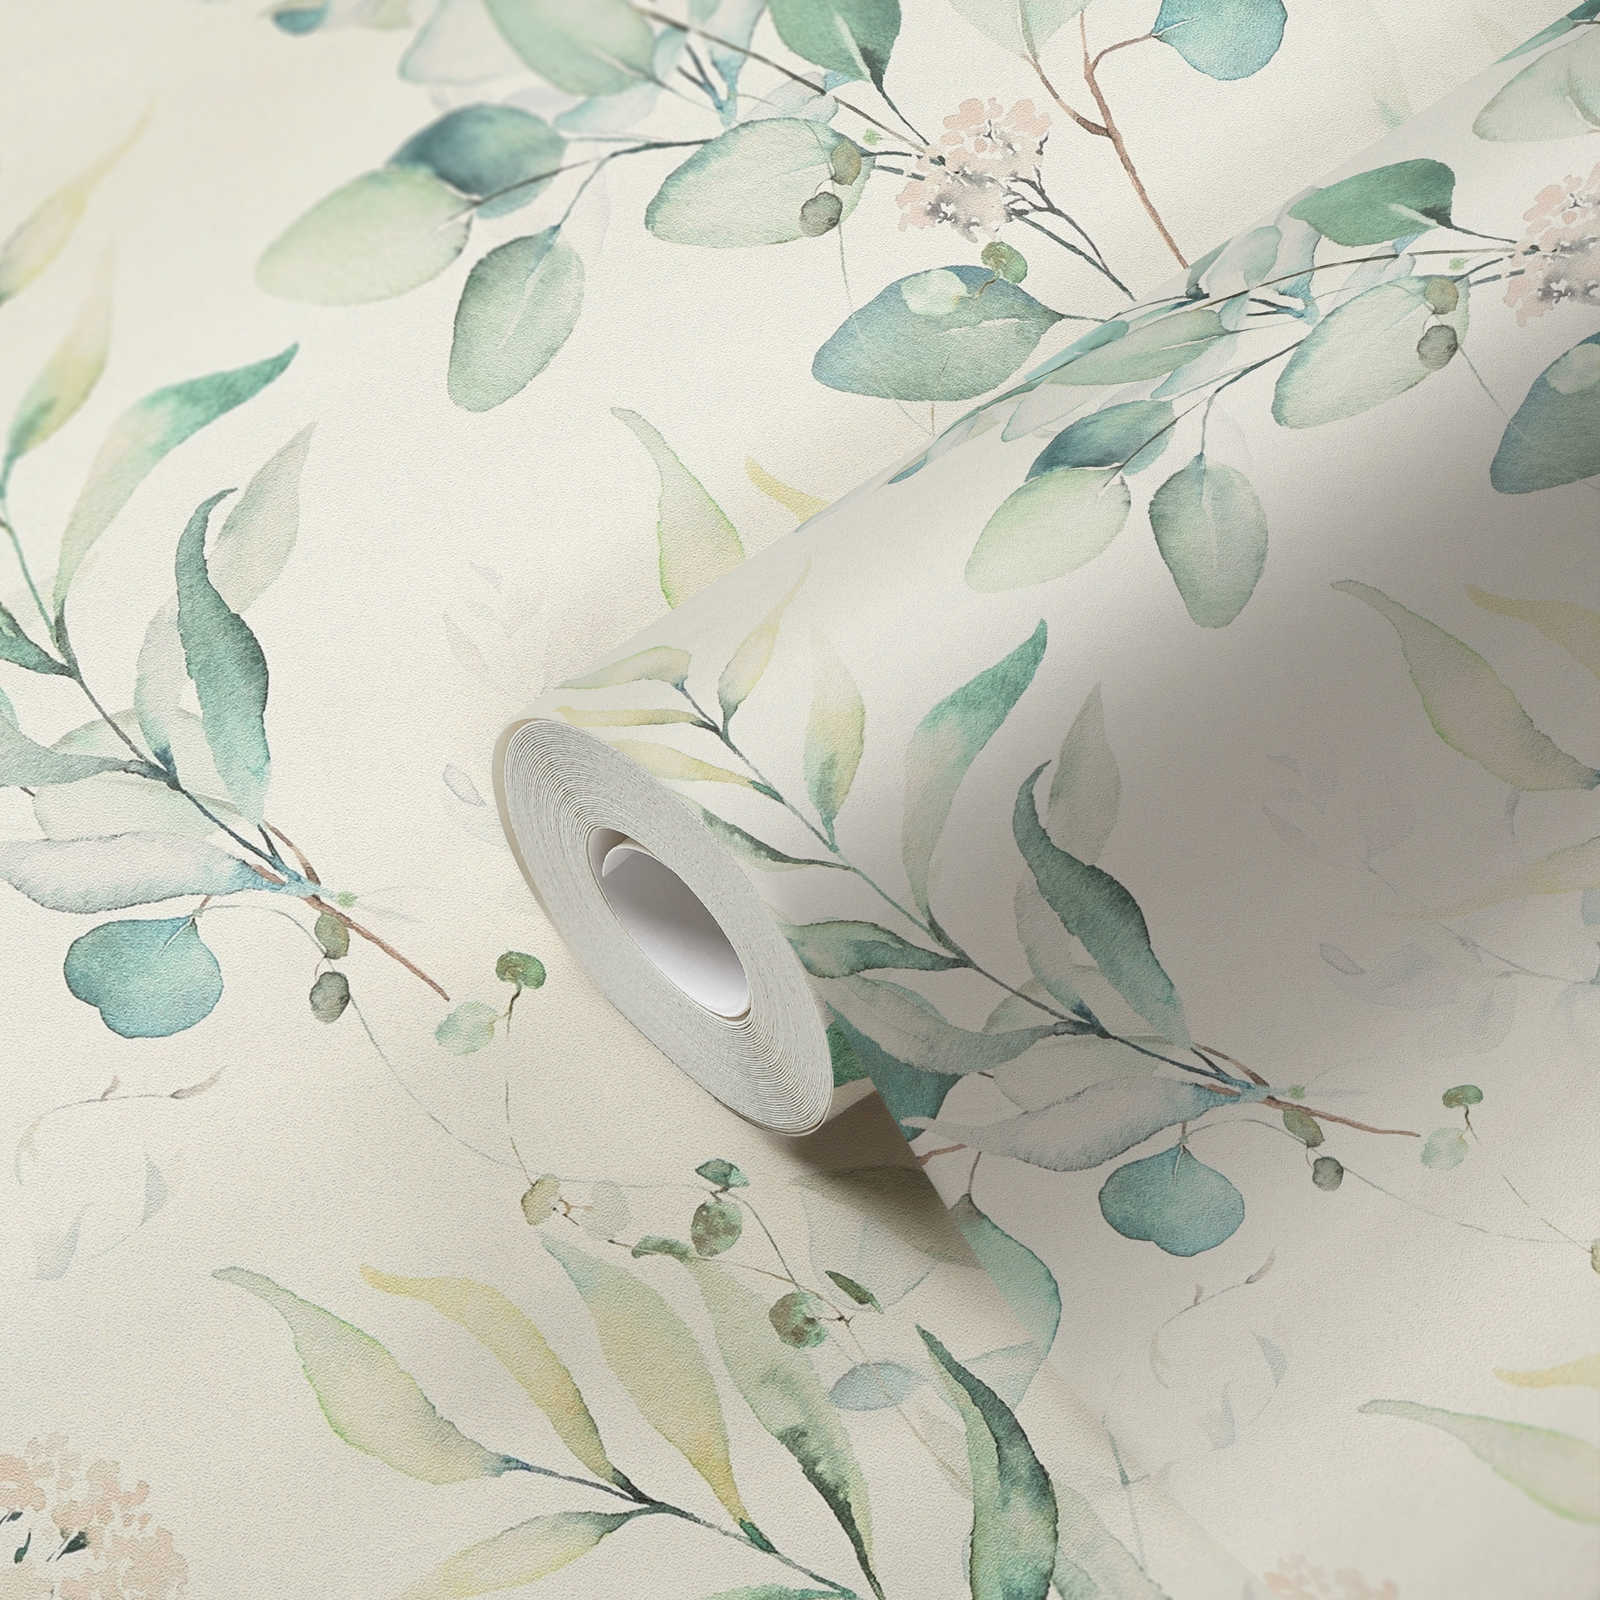             Papier peint intissé avec motif de feuilles aquarelles dans le style peinture à l'eau - crème, vert
        